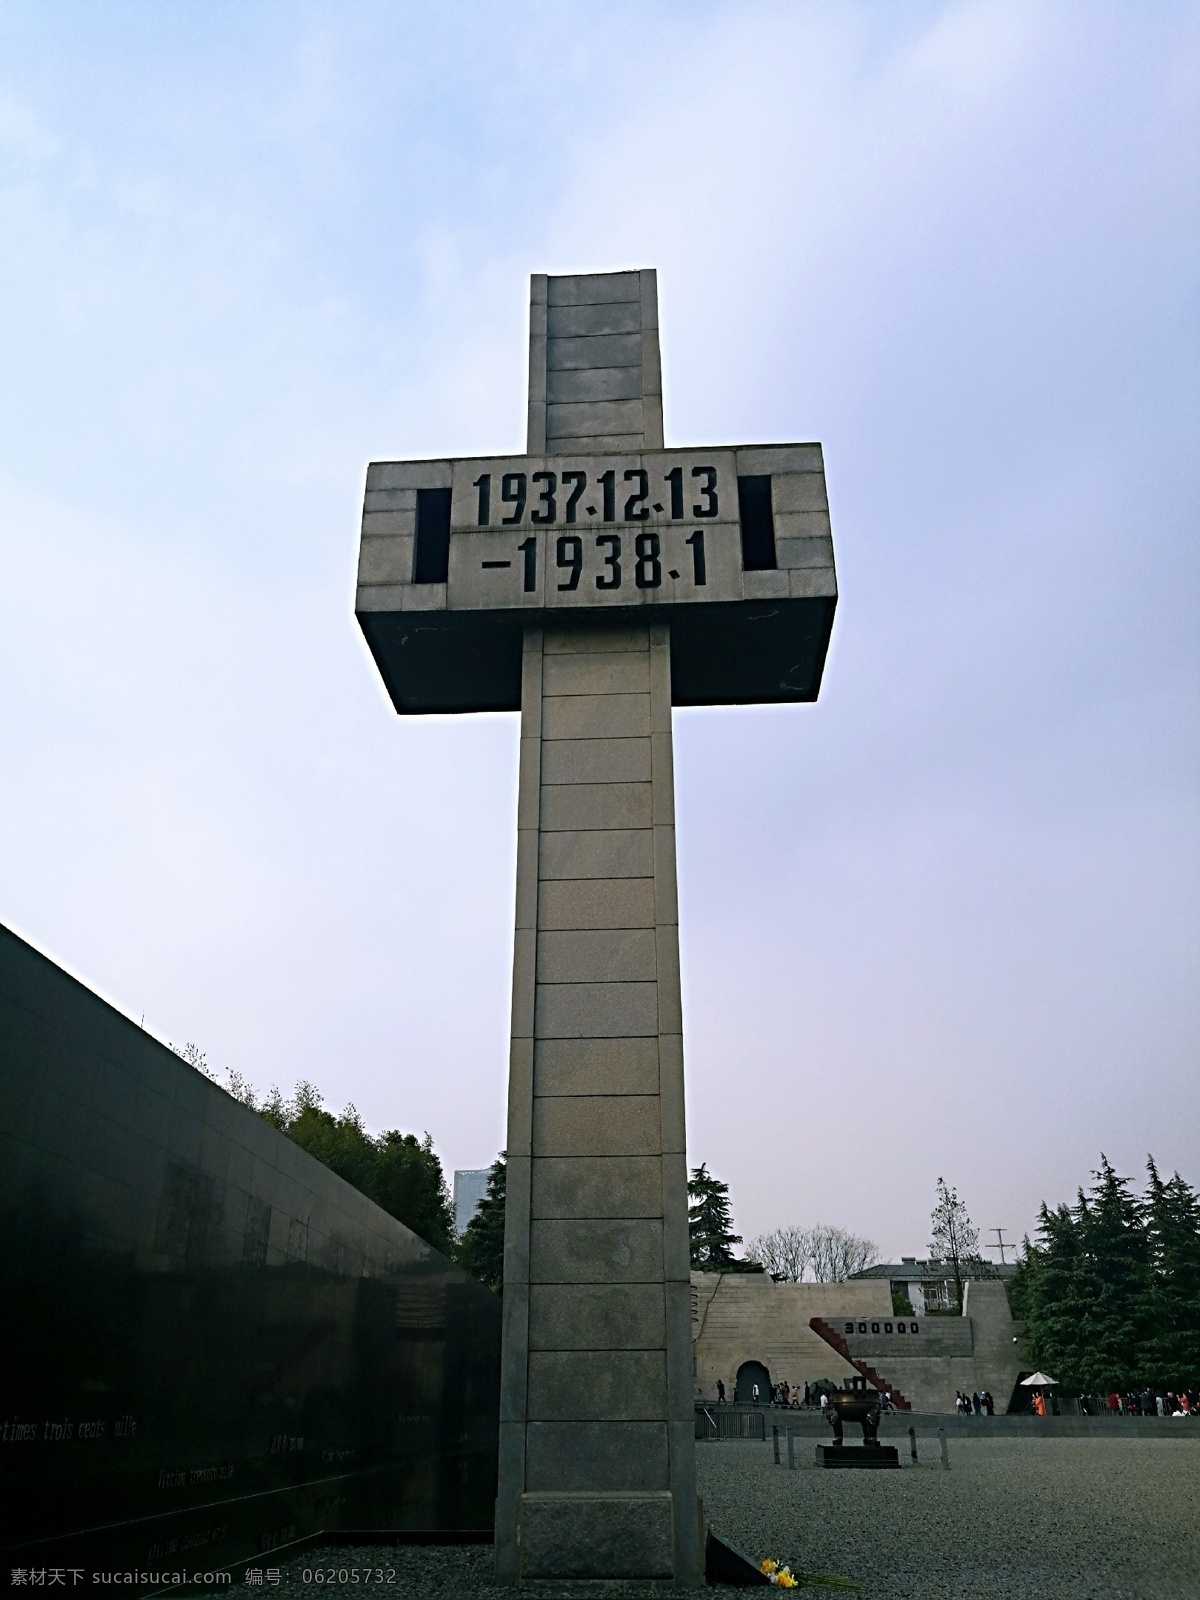 南京大屠杀 纪念碑 大屠杀纪念碑 十字架 石碑 时间 建筑园林 建筑摄影